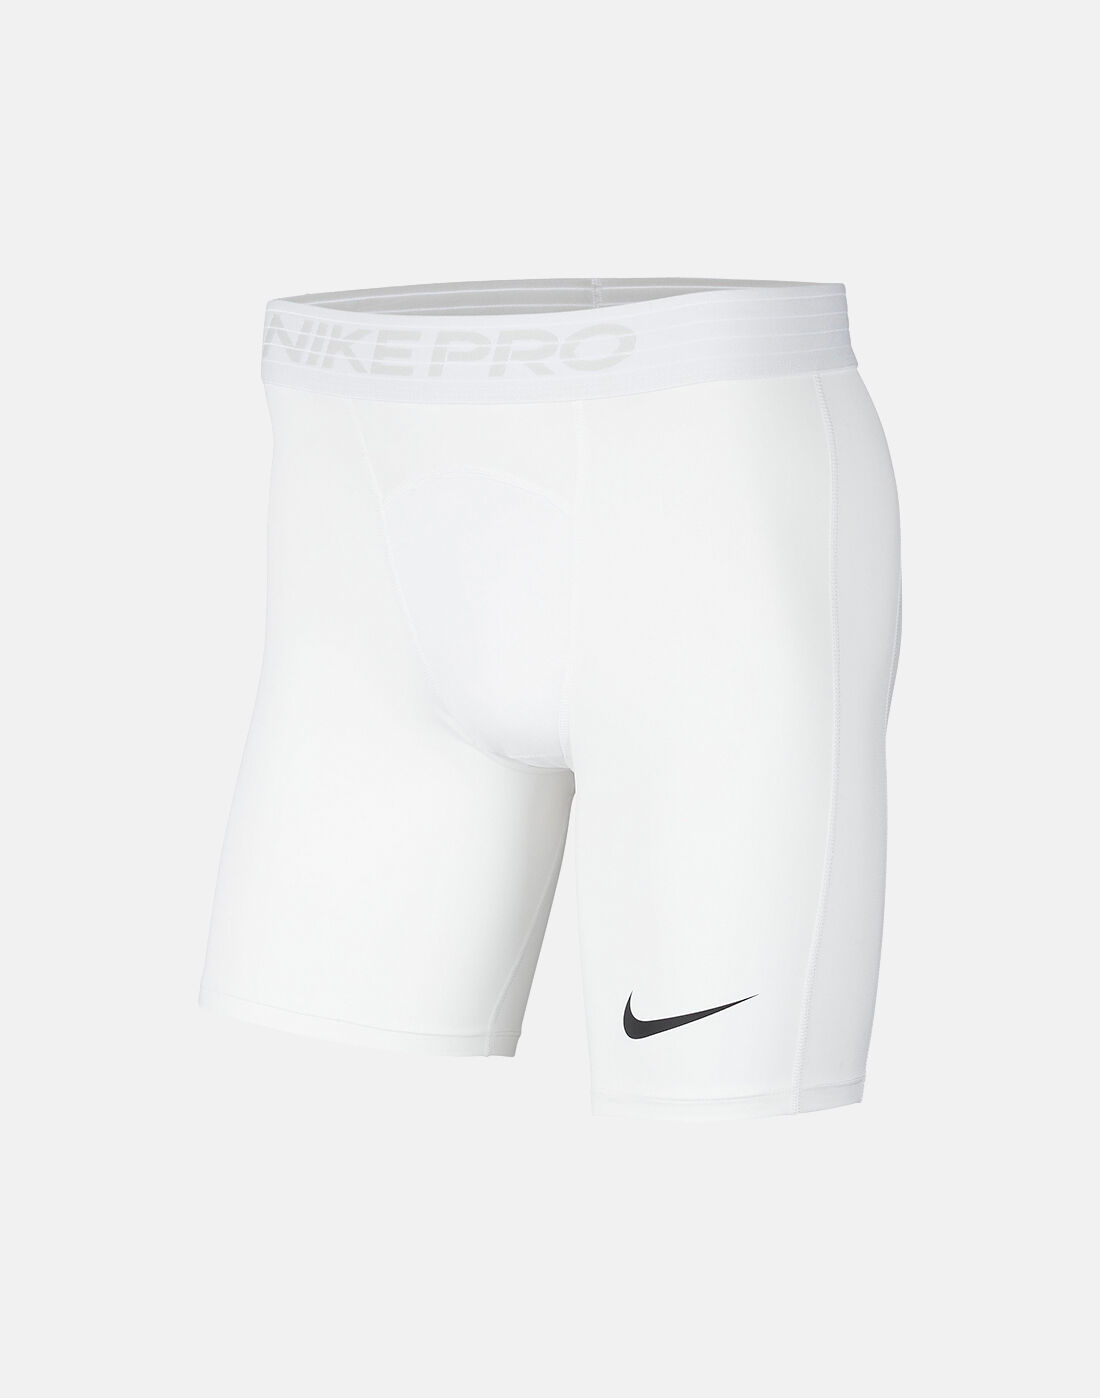 adidas base layer shorts